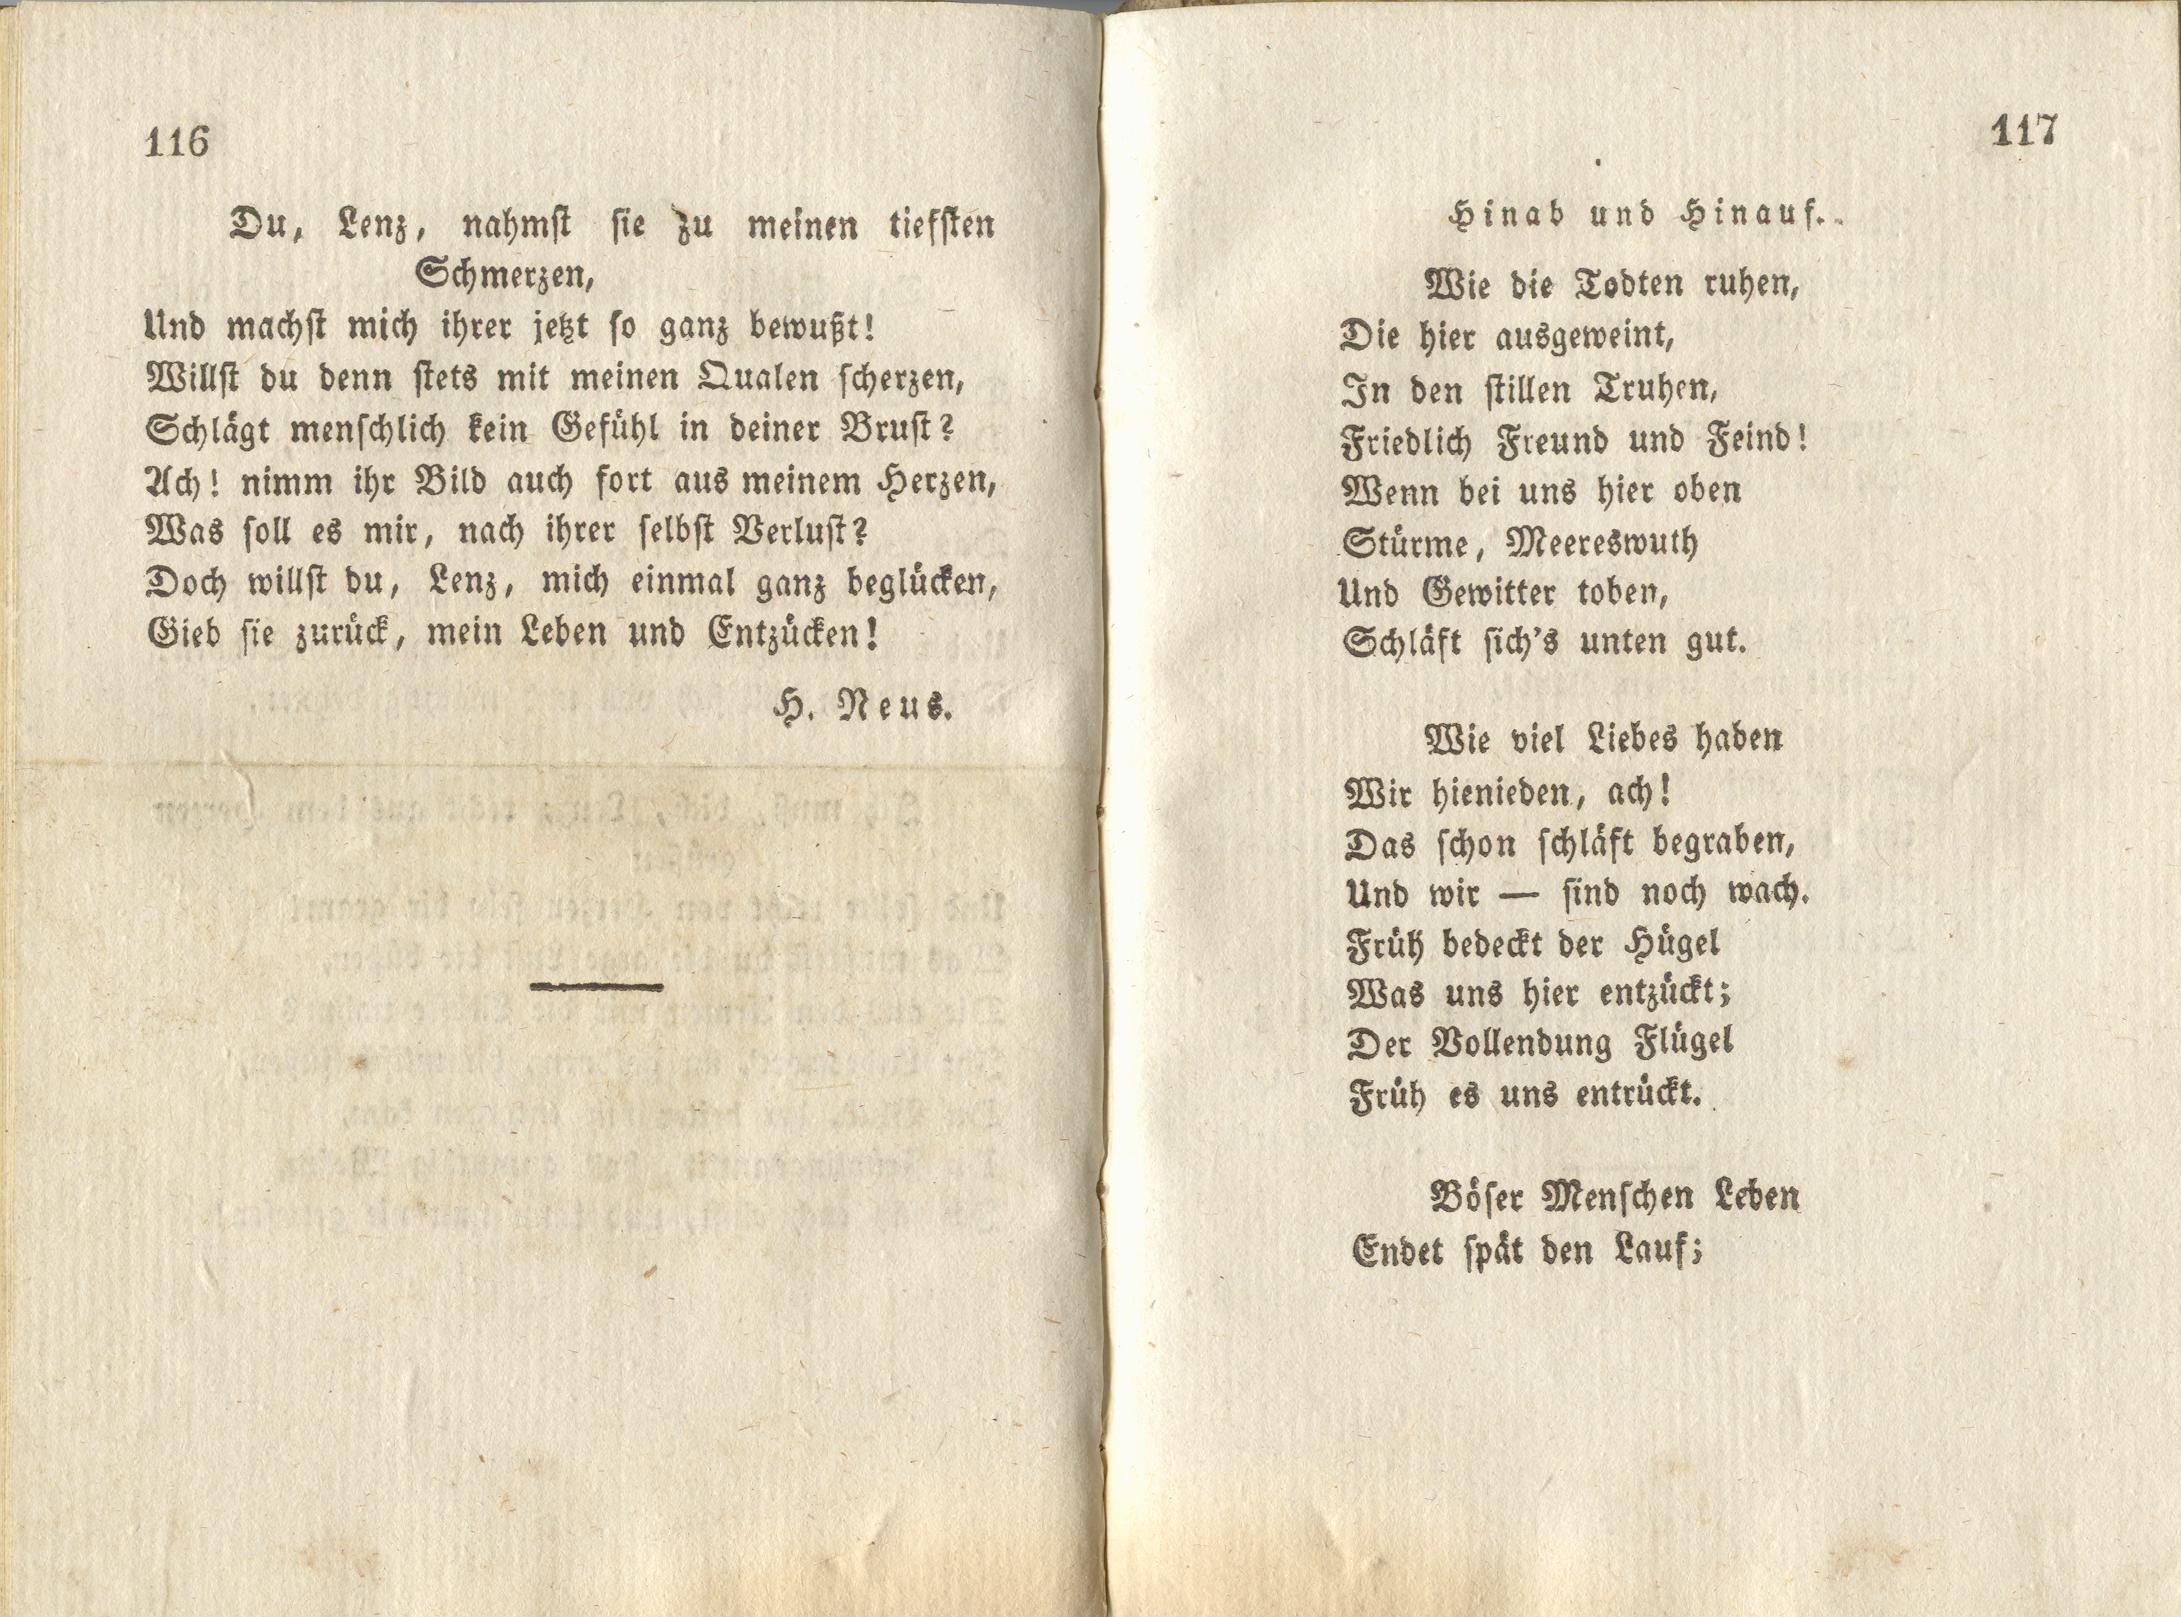 Hinab und Hinauf (1828) | 1. (116-117) Main body of text